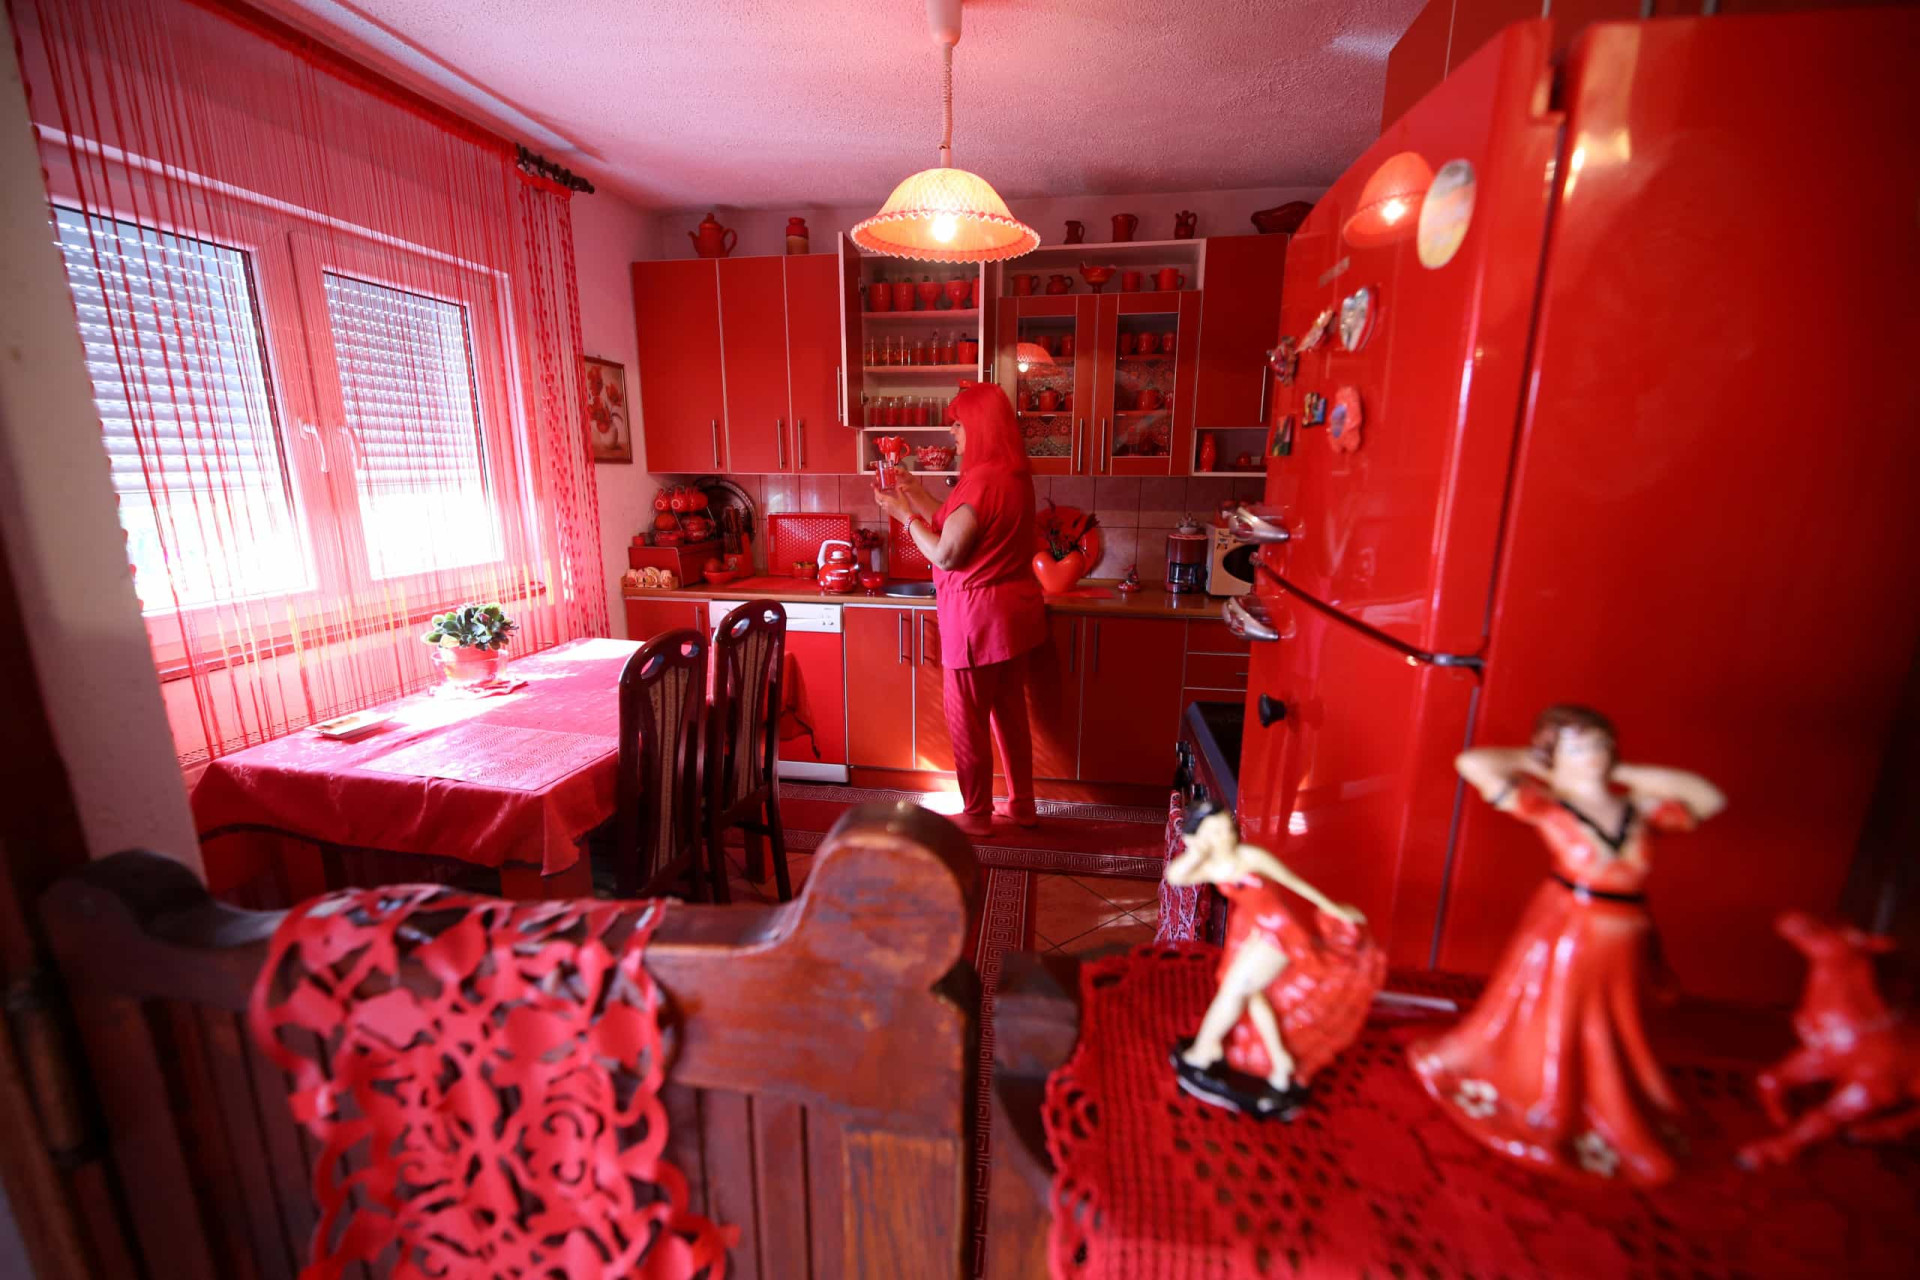 Жизнь в красном цвете. Красная жизнь. Публичный дом в Красном цвете. Странные предметы красного цвета. Красное окружение.